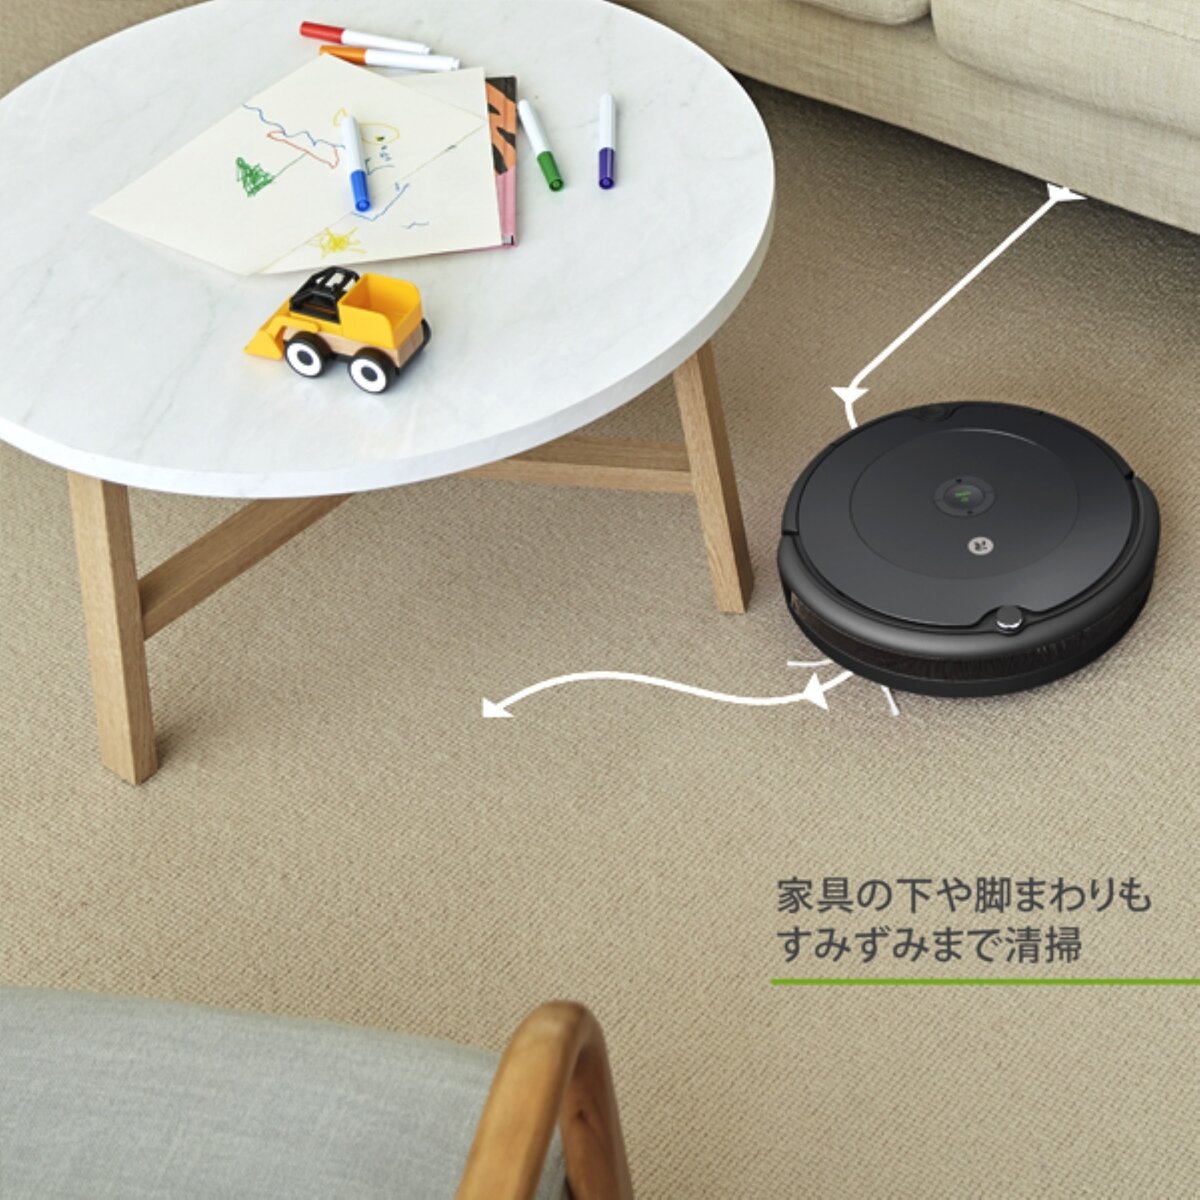 アイロボット iRobot ルンバ693 / Roomba693